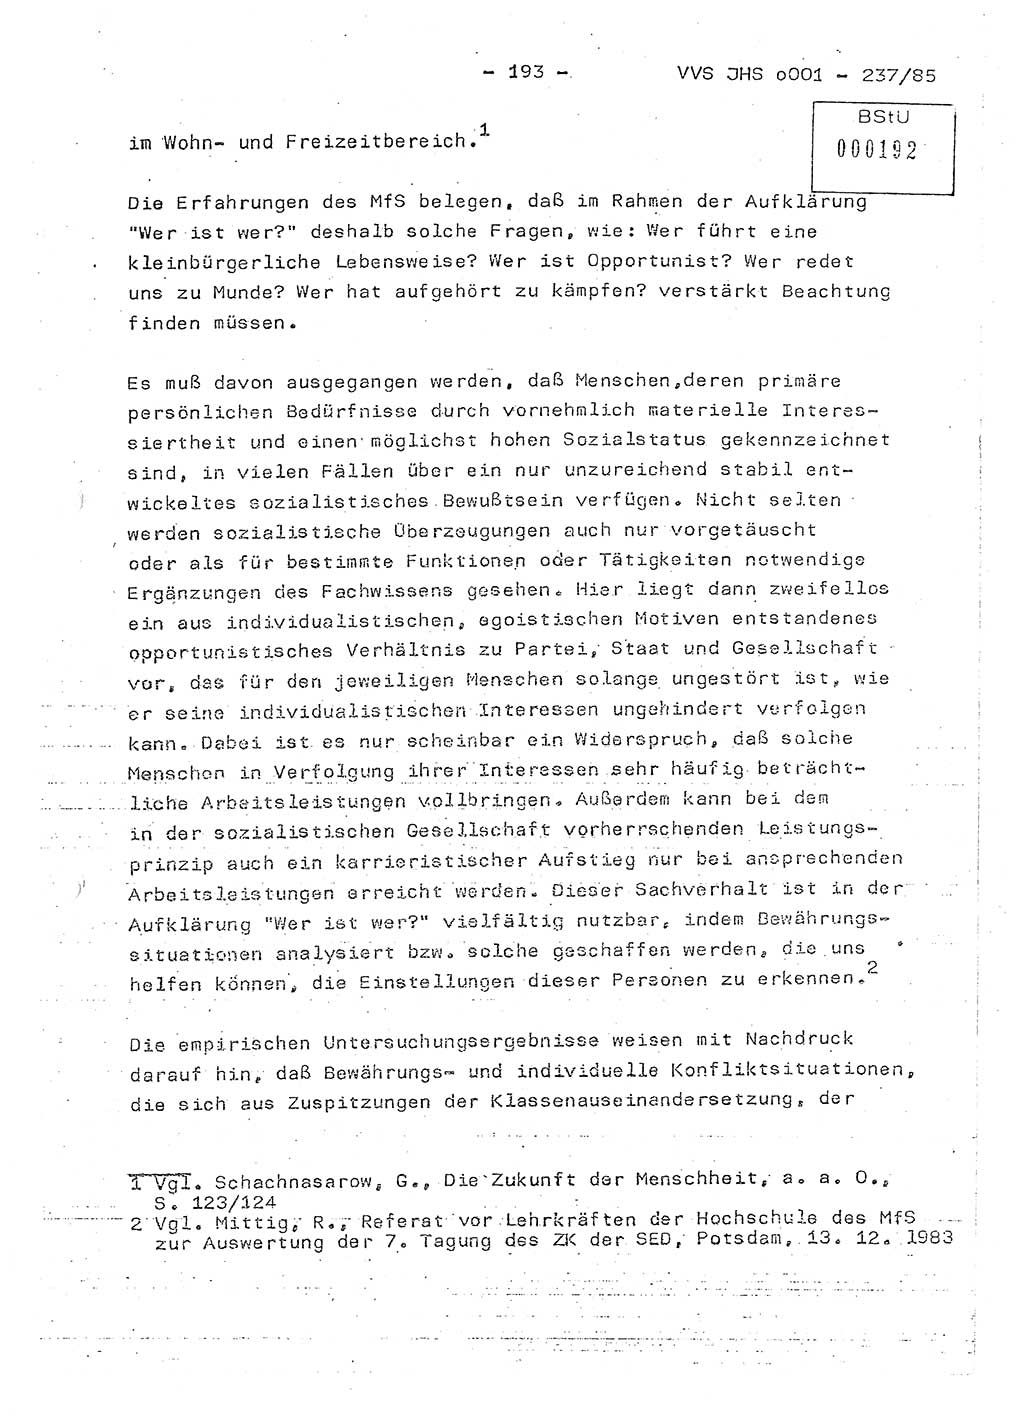 Dissertation Oberstleutnant Peter Jakulski (JHS), Oberstleutnat Christian Rudolph (HA Ⅸ), Major Horst Böttger (ZMD), Major Wolfgang Grüneberg (JHS), Major Albert Meutsch (JHS), Ministerium für Staatssicherheit (MfS) [Deutsche Demokratische Republik (DDR)], Juristische Hochschule (JHS), Vertrauliche Verschlußsache (VVS) o001-237/85, Potsdam 1985, Seite 193 (Diss. MfS DDR JHS VVS o001-237/85 1985, S. 193)